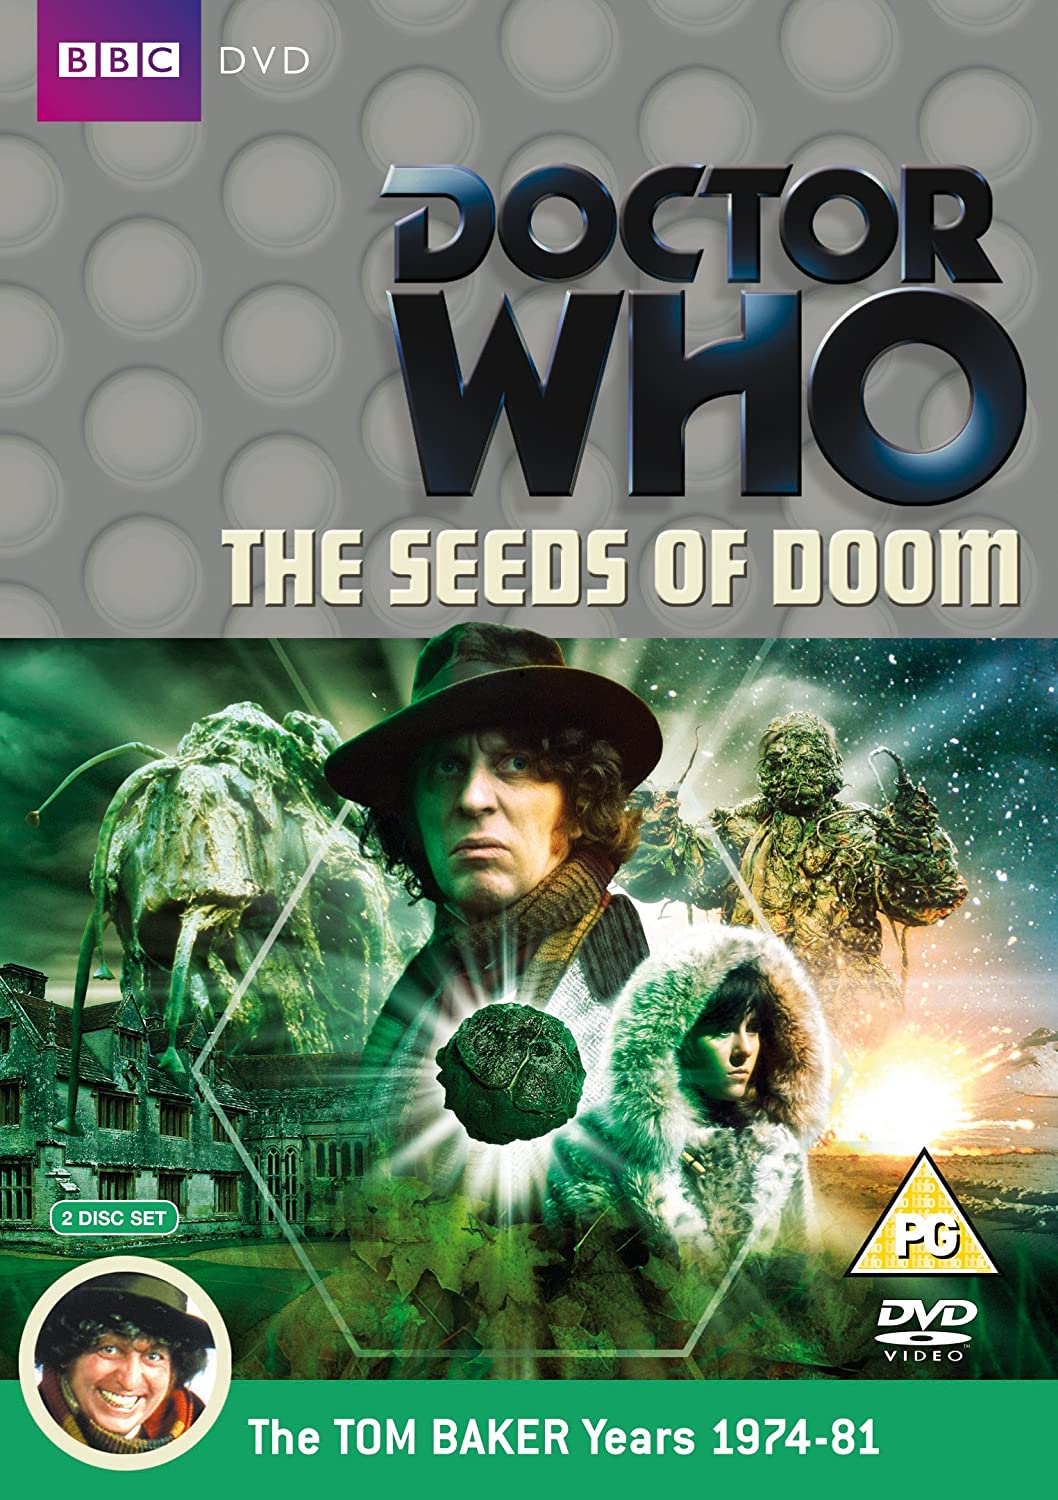 Doctor Who: The Seeds of Doom (1976) starring Tom Baker, Elisabeth Sladen